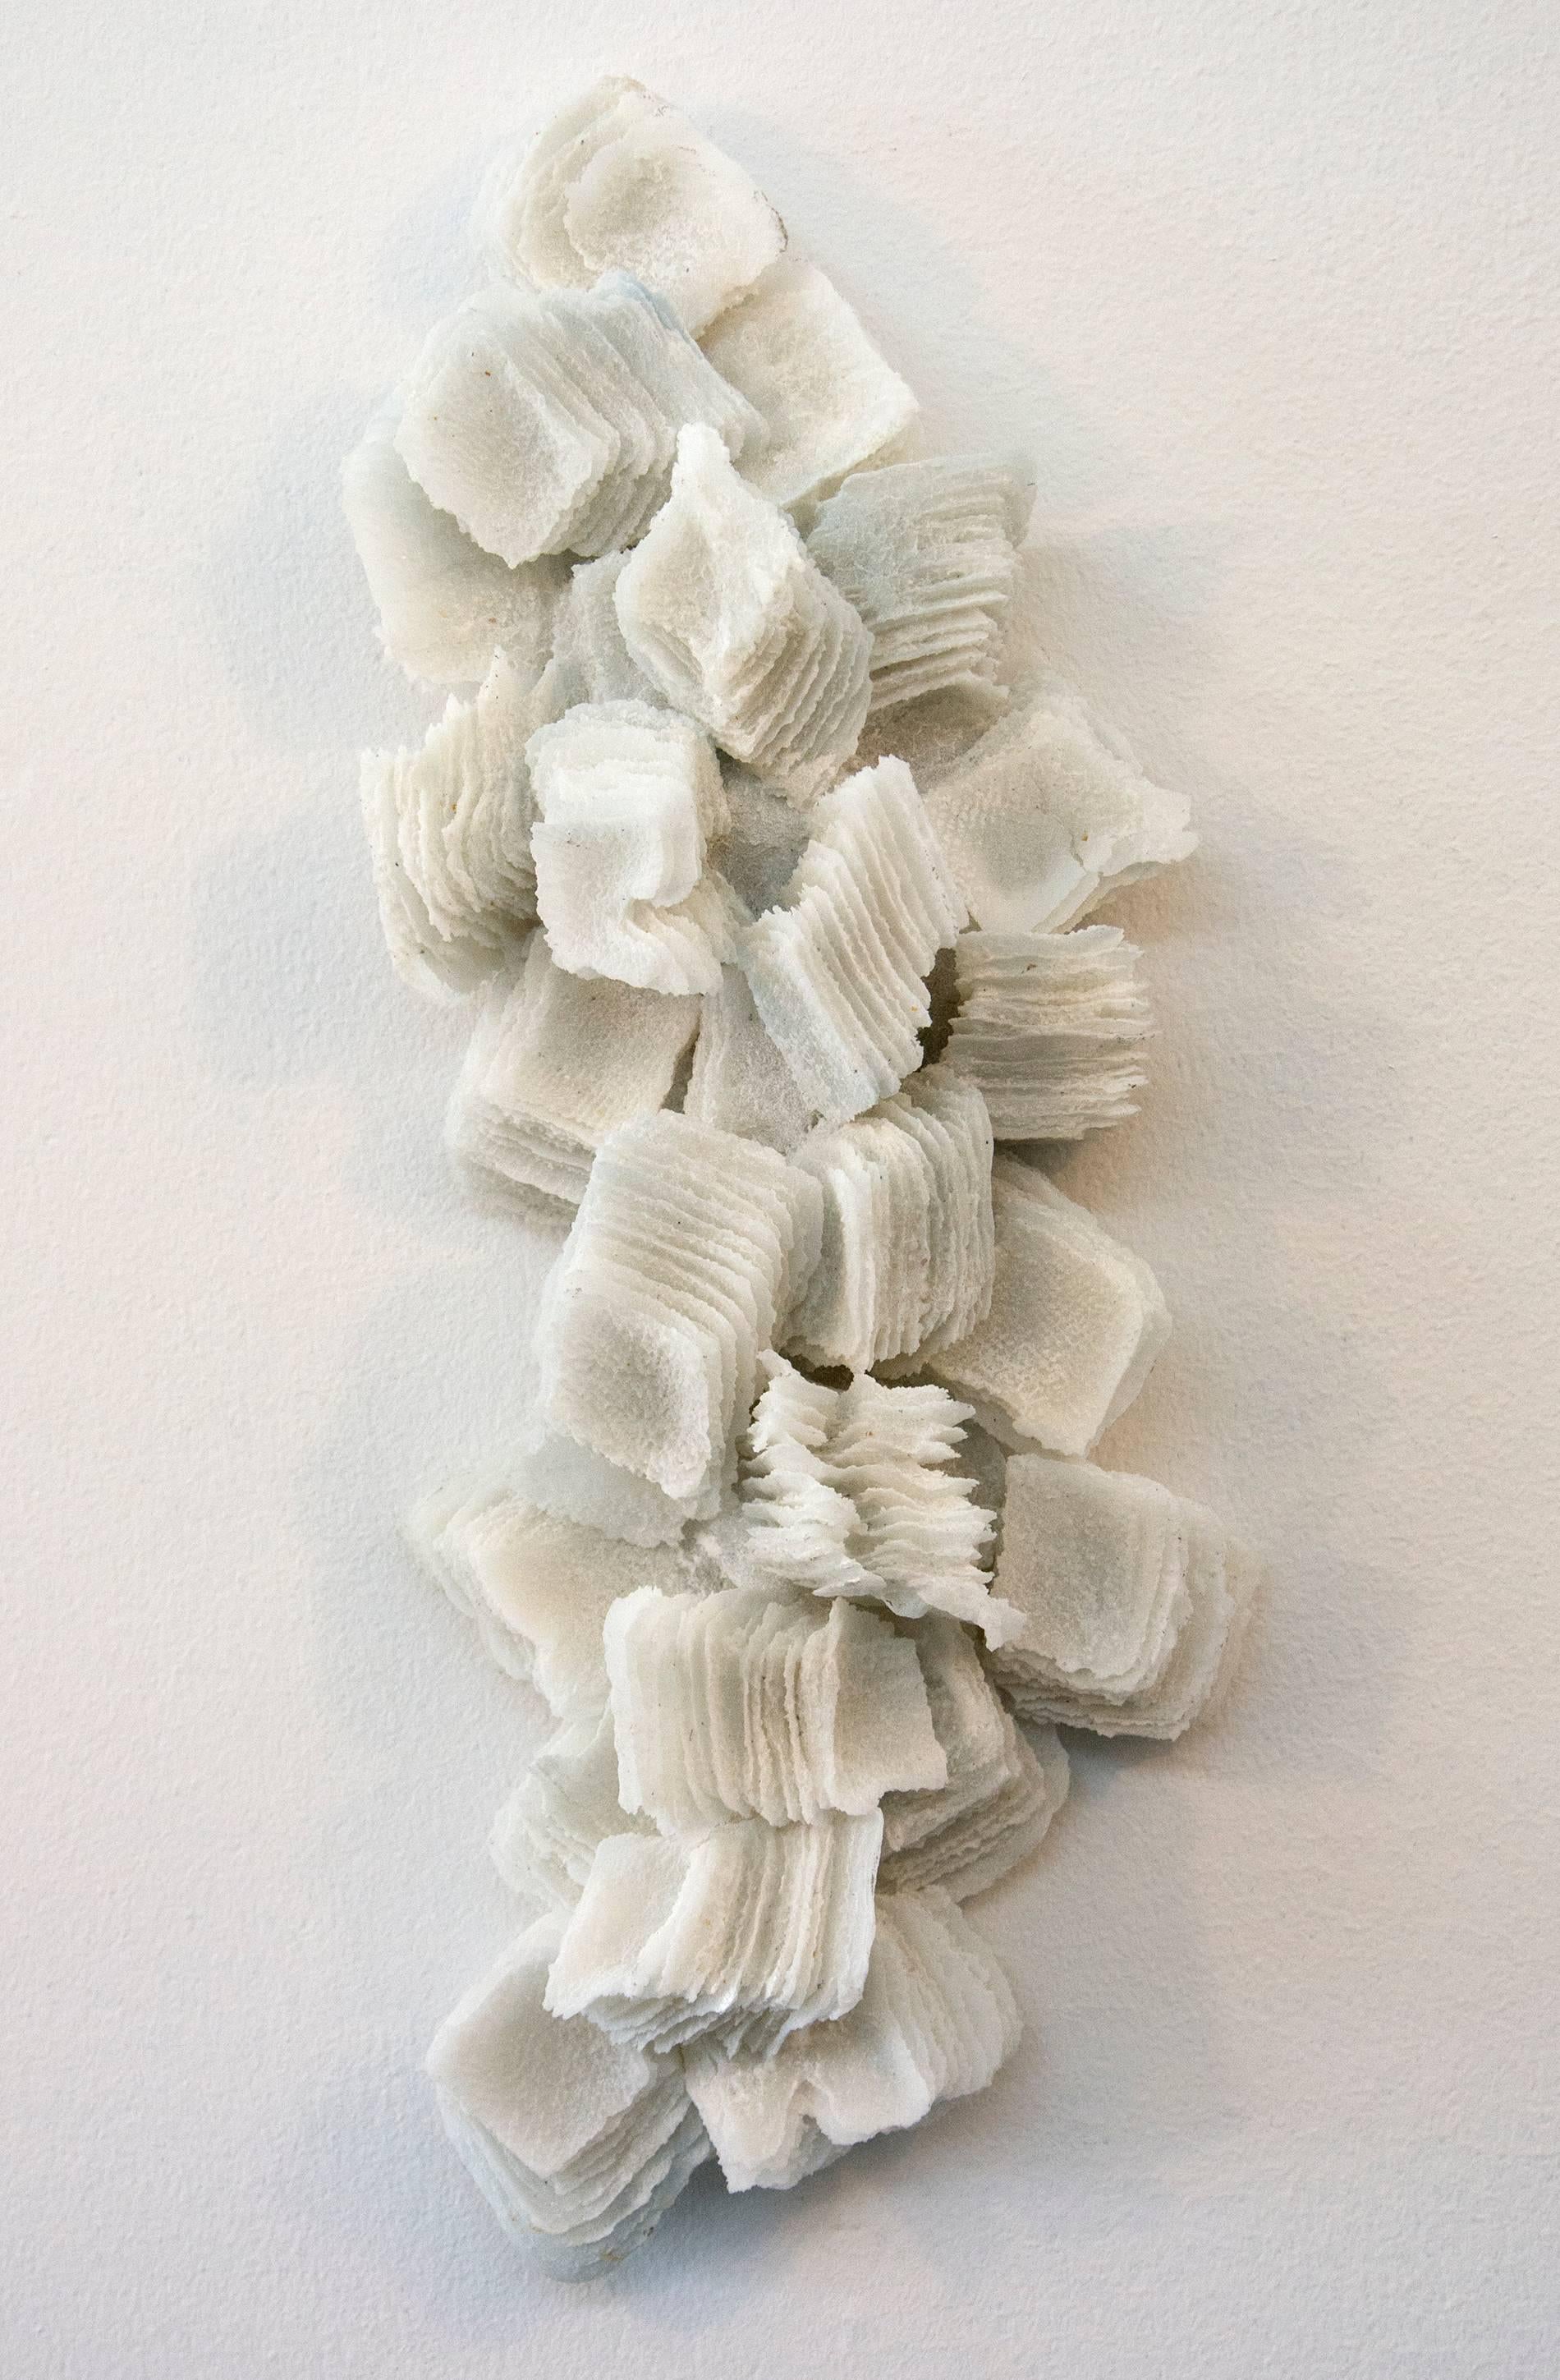 Cheryl Wilson Smith Abstract Sculpture - Ice Ridge